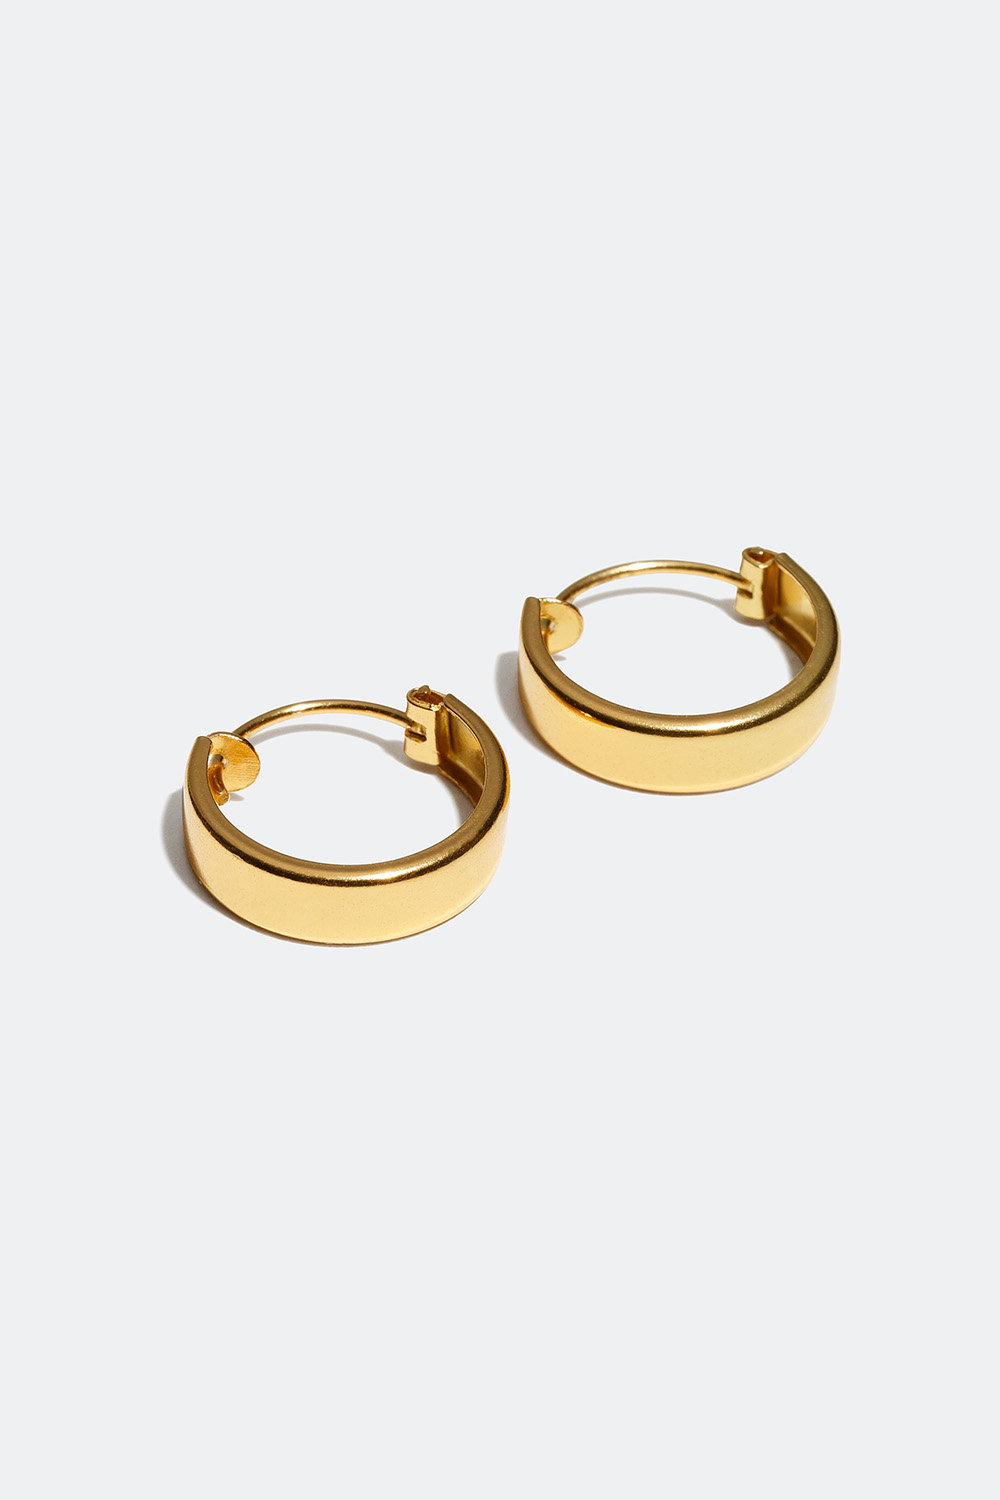 Brede øreringer, forgylt med 18K gull, 1 cm i gruppen Smykker / Øredobber hos Glitter (219439661000)